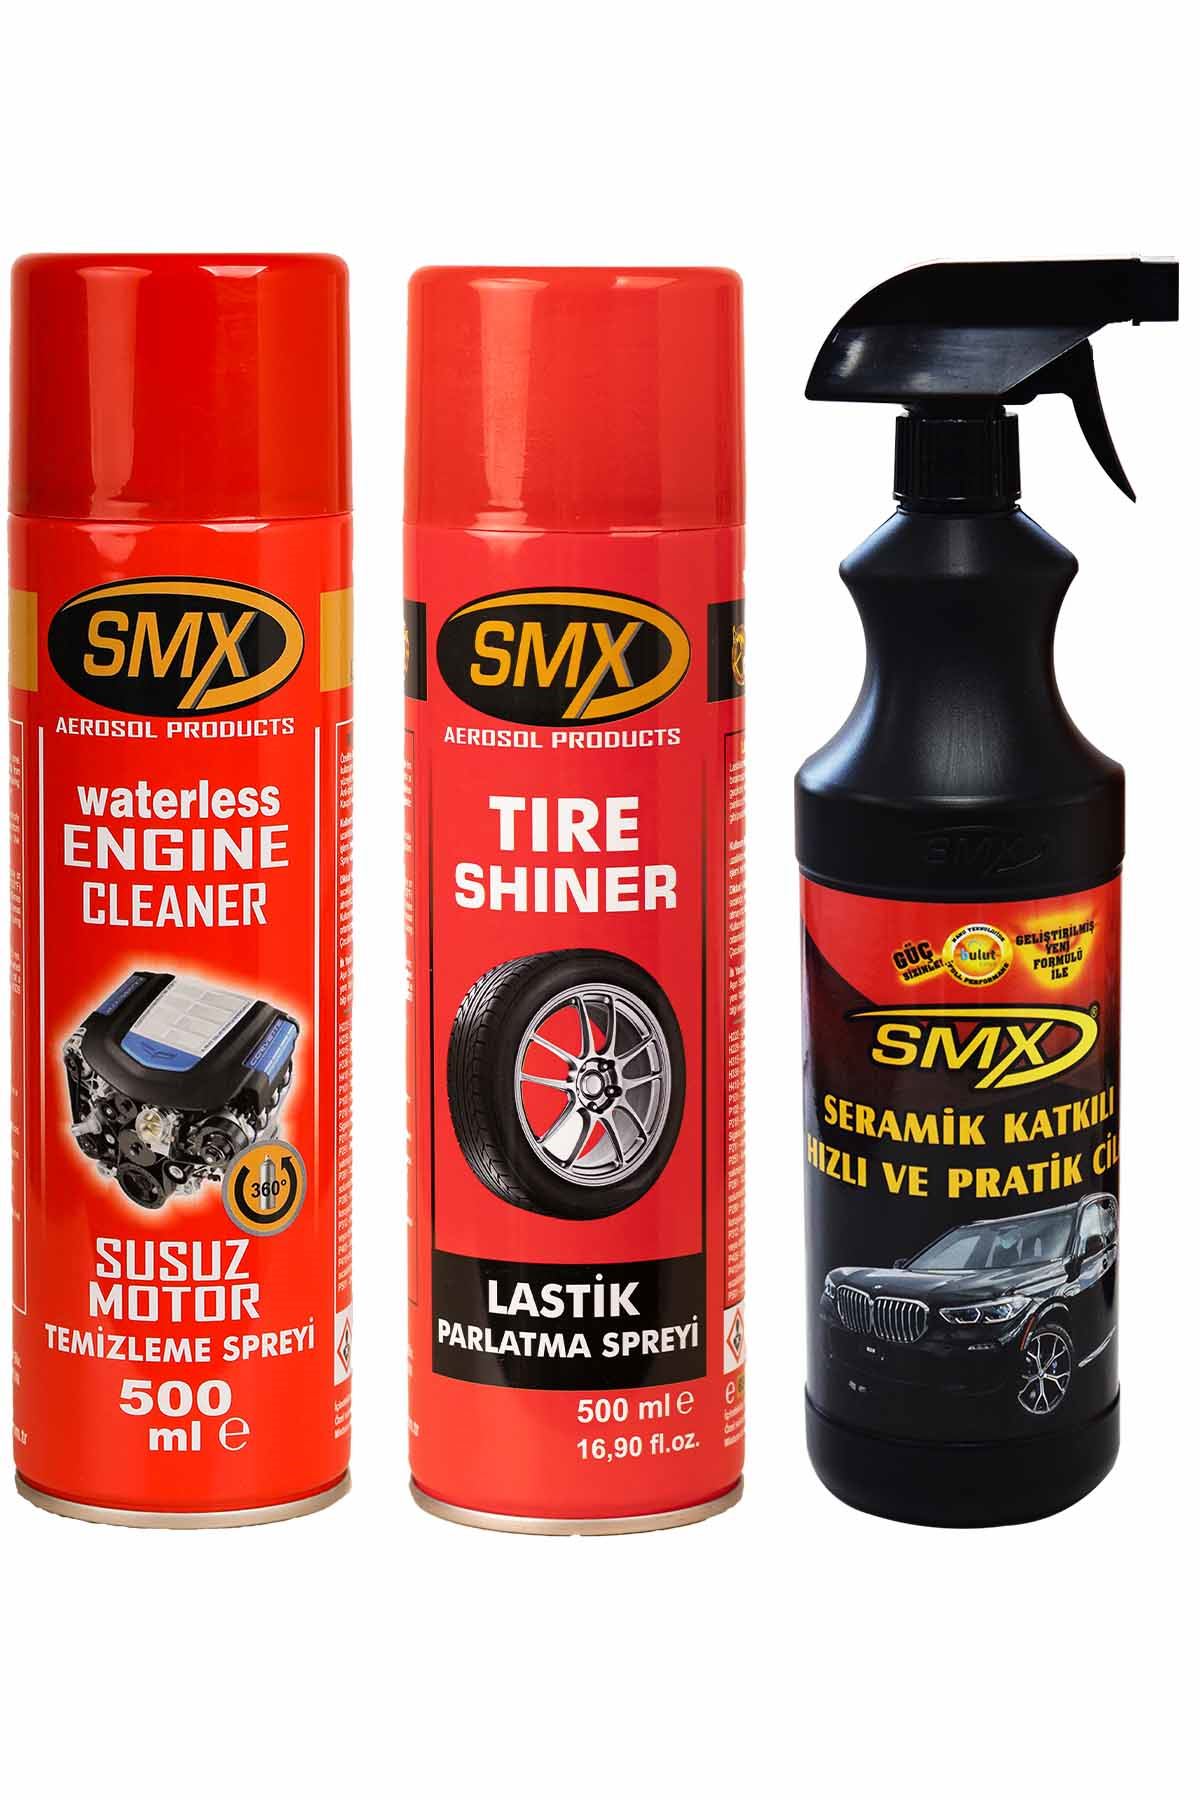 SMX Susuz Motor Temizleme Spreyi / Lastik Parlatıcı / Seramik Cila / Hızlı Cila / Pratik Cila